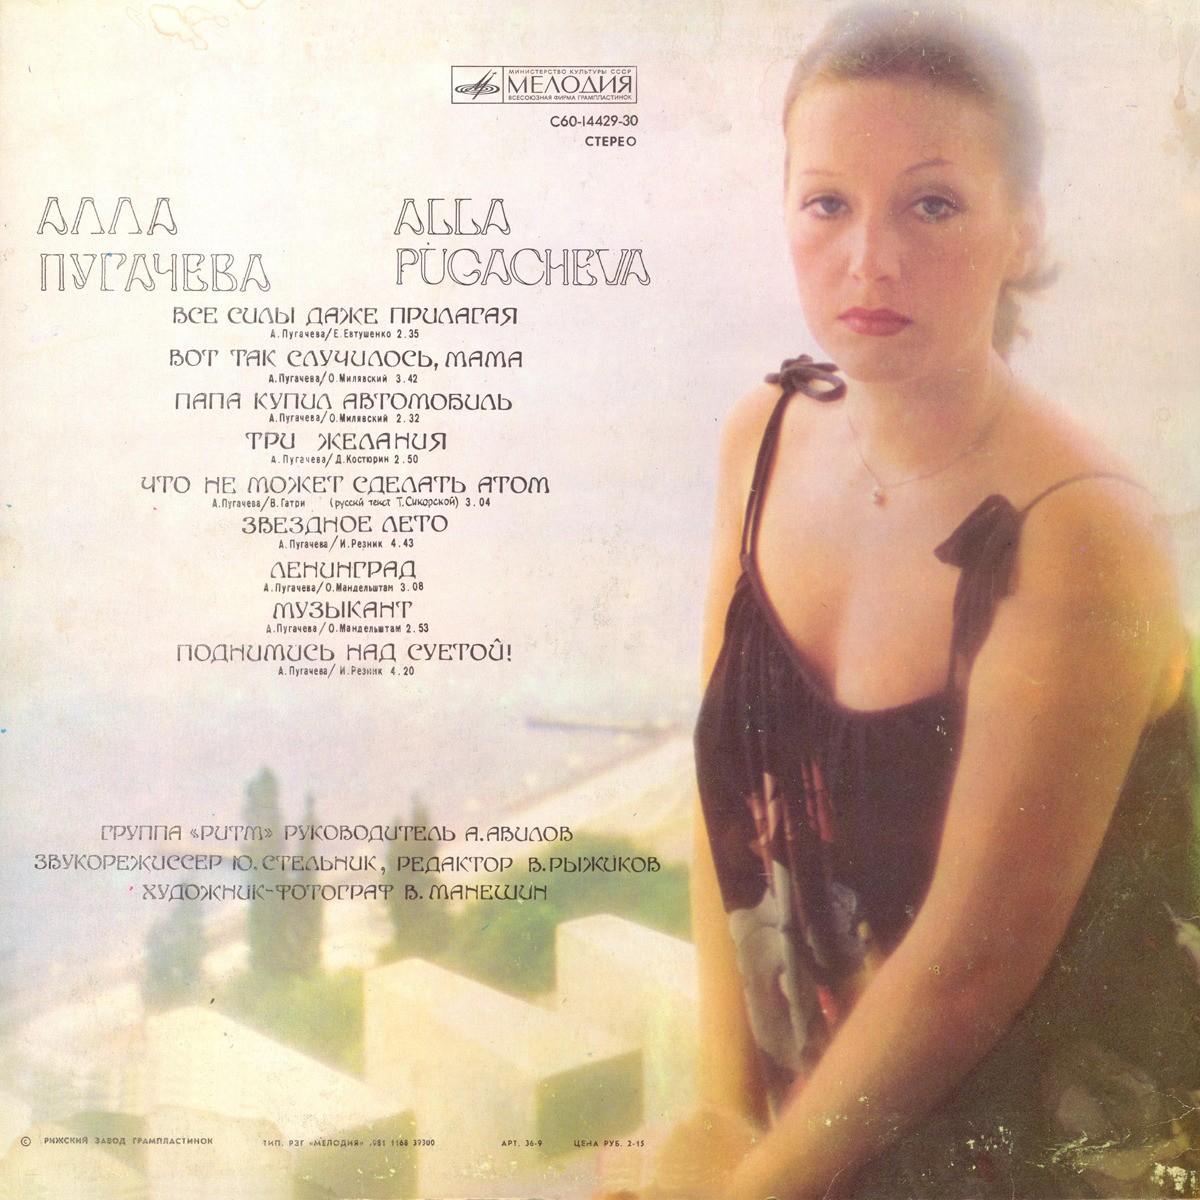 Alla Pugacheva, álbum "¡Levántate sobre la vanidad!"